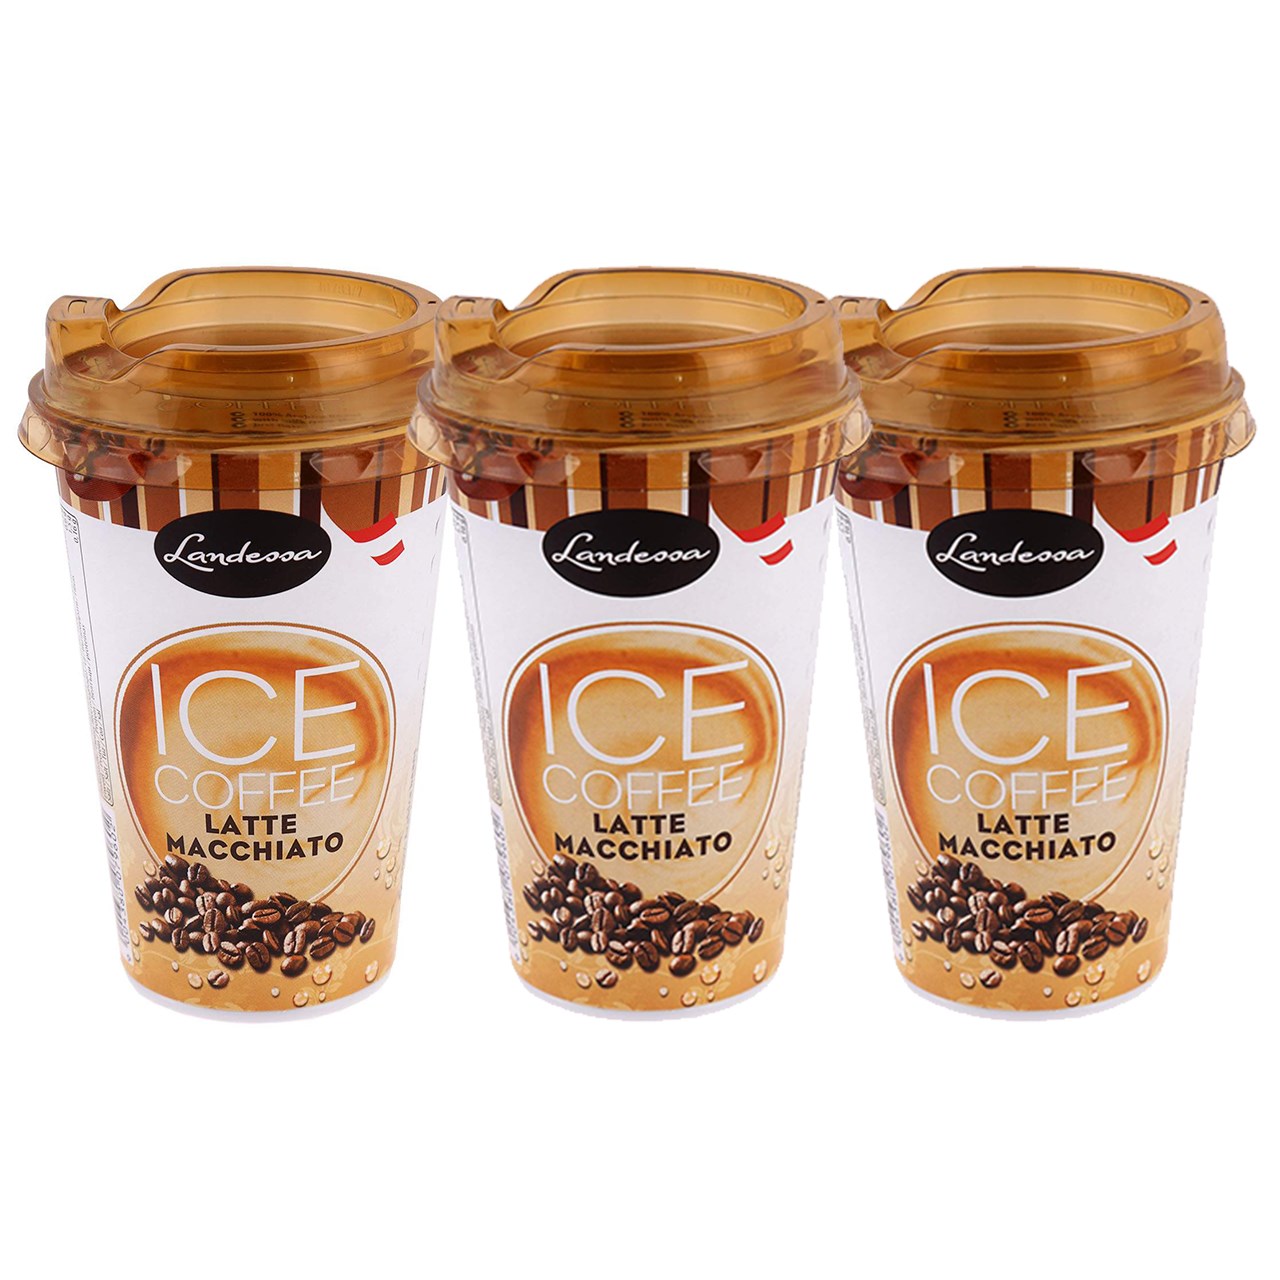 نوشیدنی قهوه سرد  لندسا مدل Latte Macchiato بسته 3 عددی